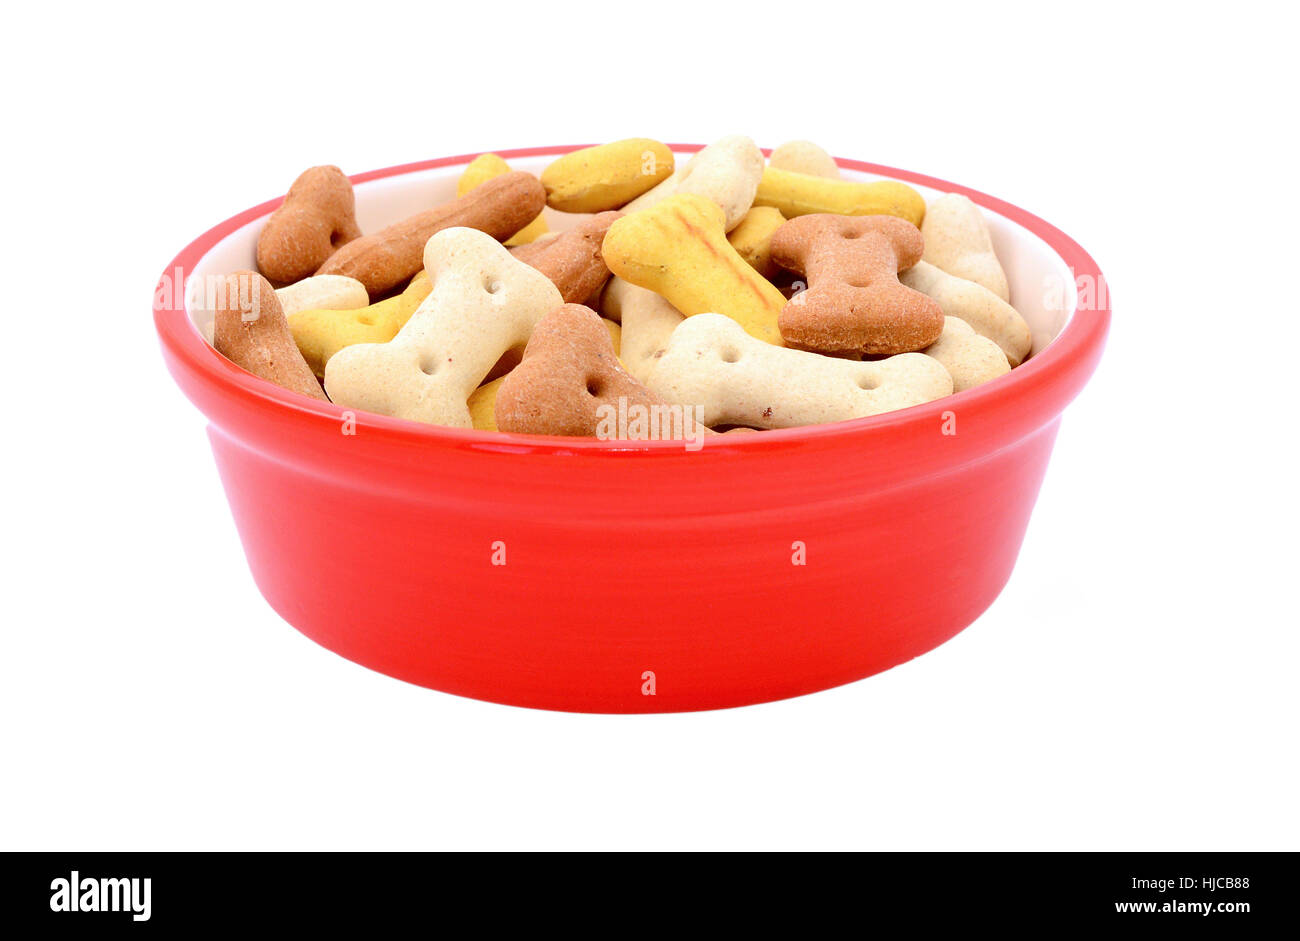 En forme d'os secs biscuits pour chiens rouge dans un bol d'aliments pour animaux de compagnie, isolé sur fond blanc Banque D'Images